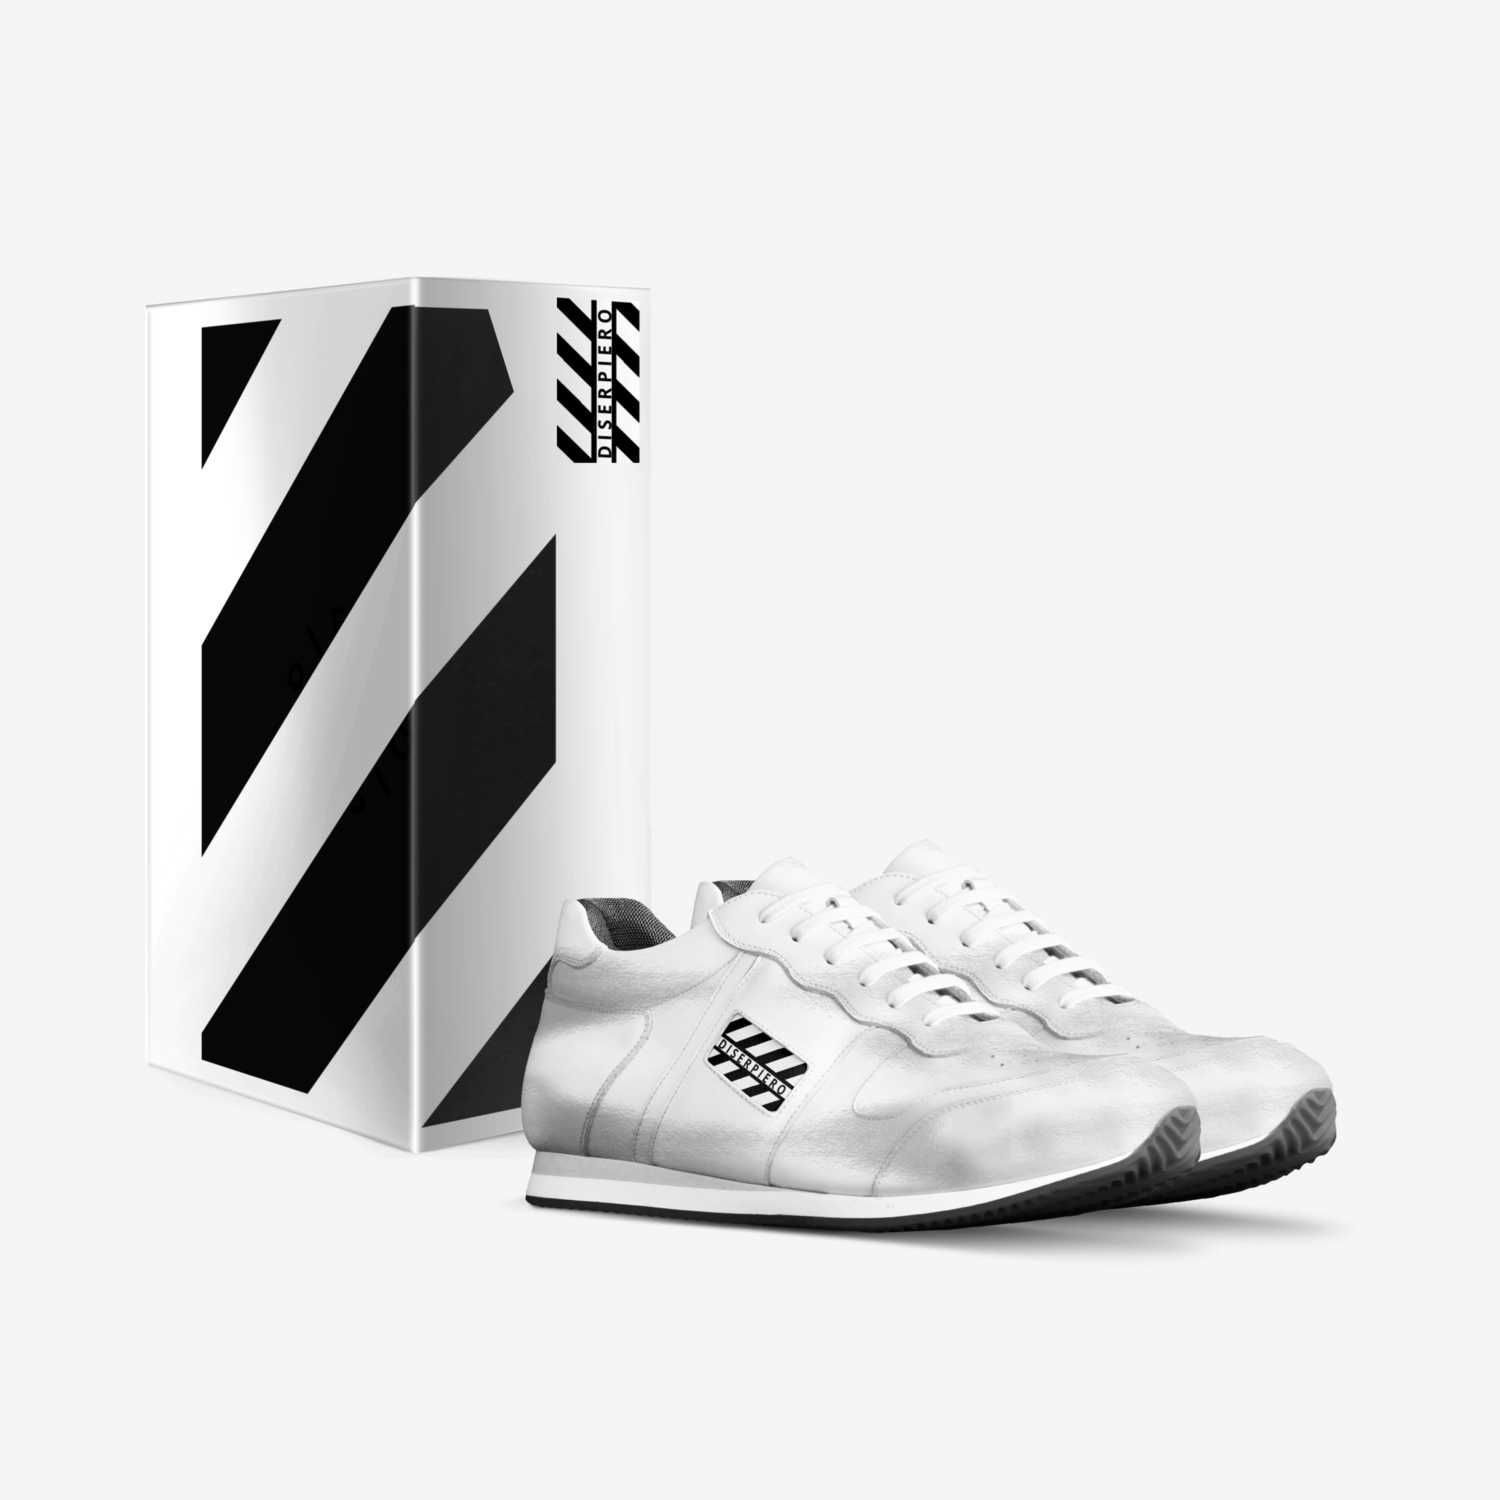 DI SER PIERO custom made in Italy shoes by Di Ser Piero | Box view